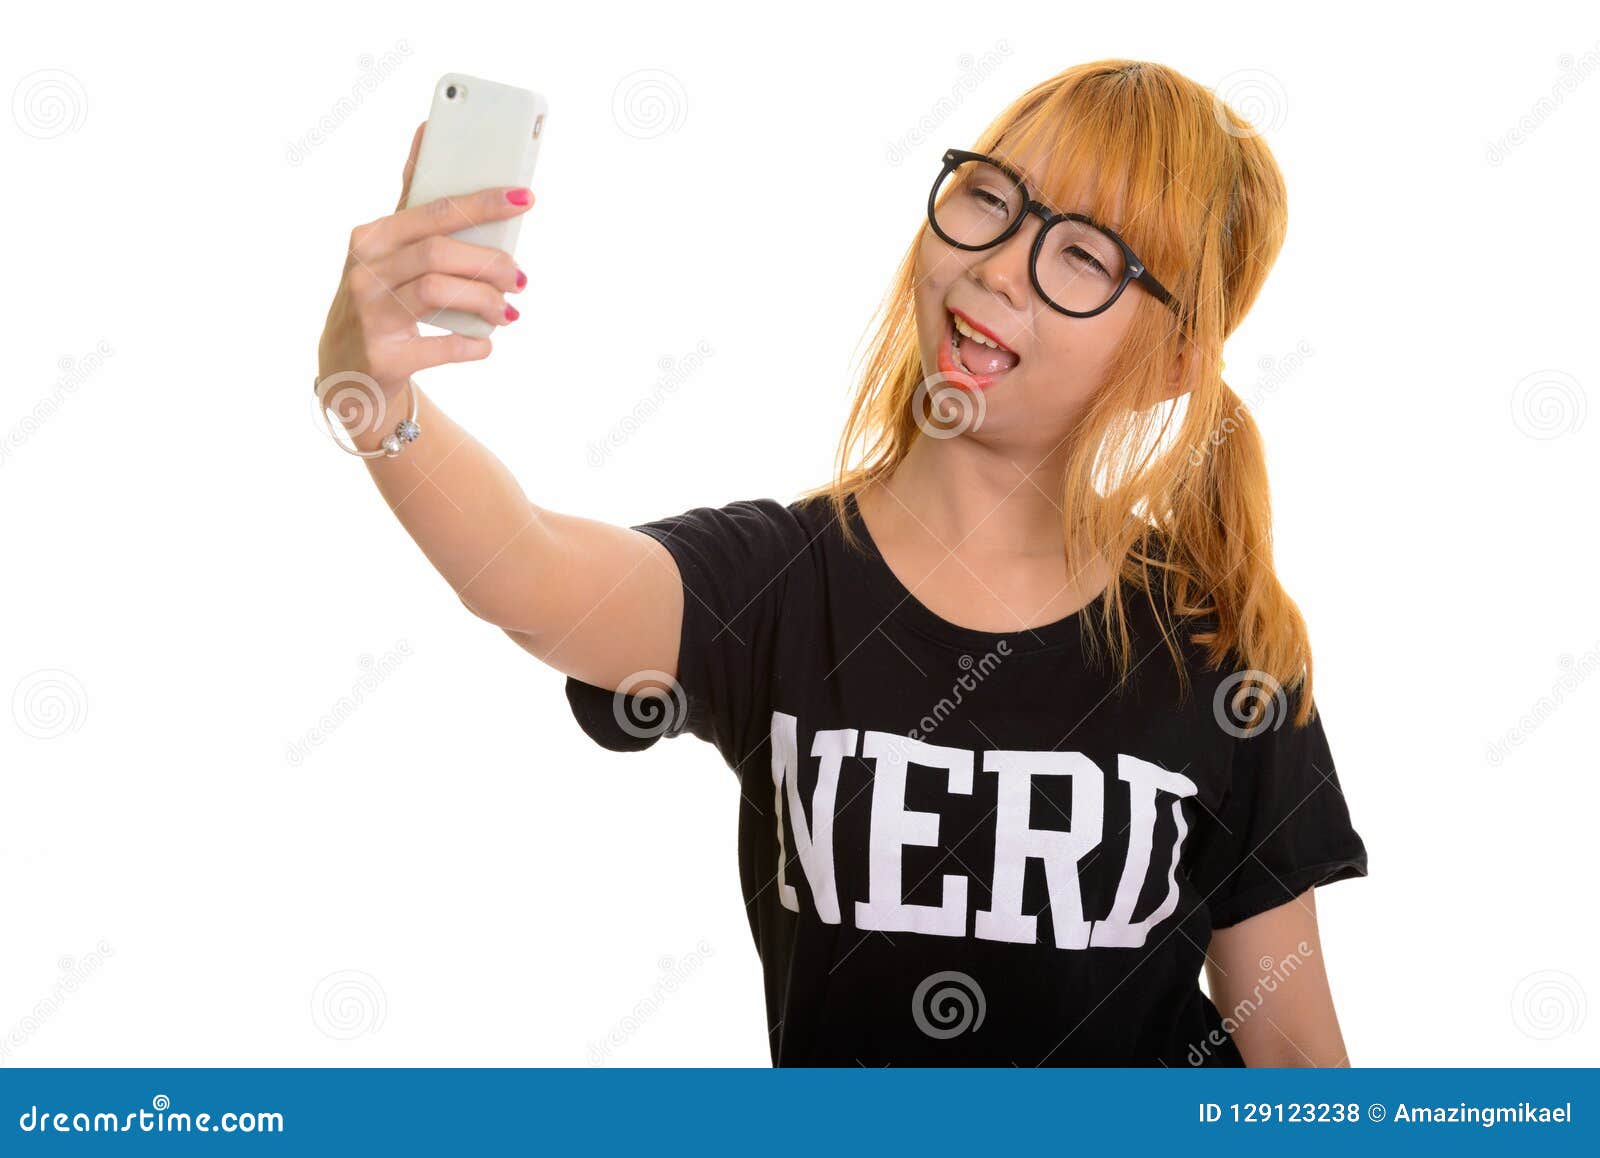 nerd teen girl selfie porn gallerie